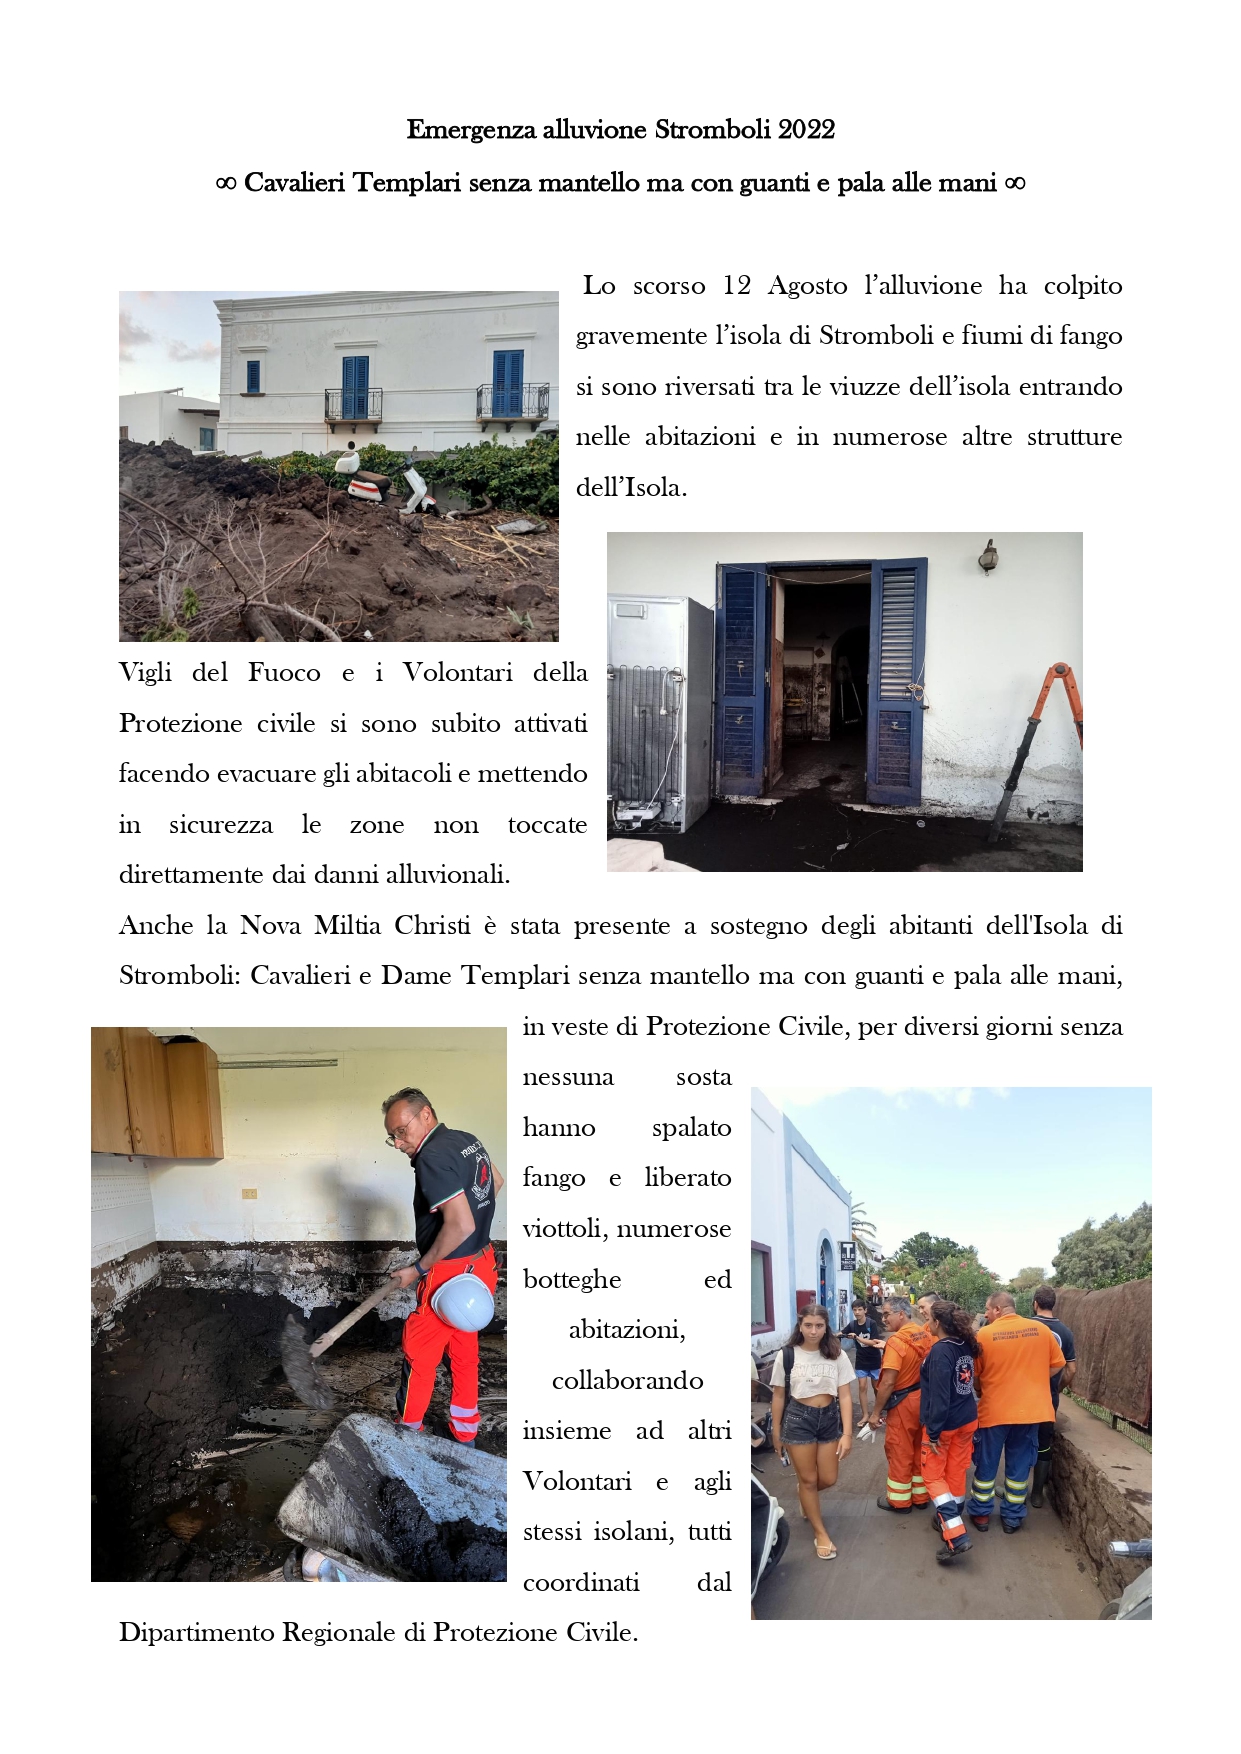 Emergenza Stromboli 2022_page-0001